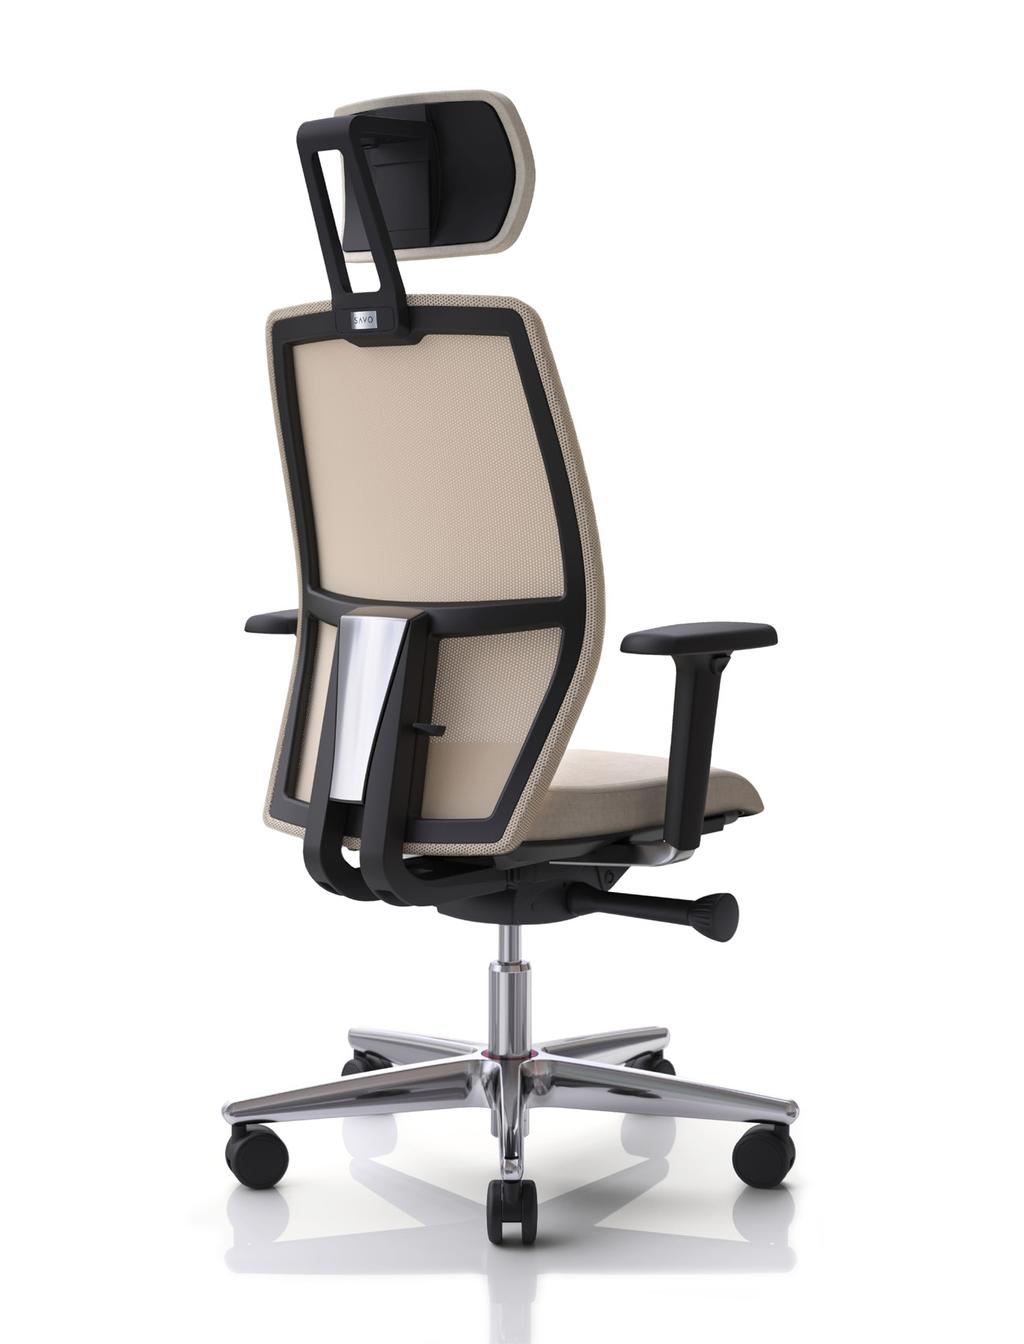 SAVO Eos Arbetsstolen Savo Eos är ett användarvänligt och modernt designat alternativ som lämpar sig bra på de allra flesta arbetsplatser.